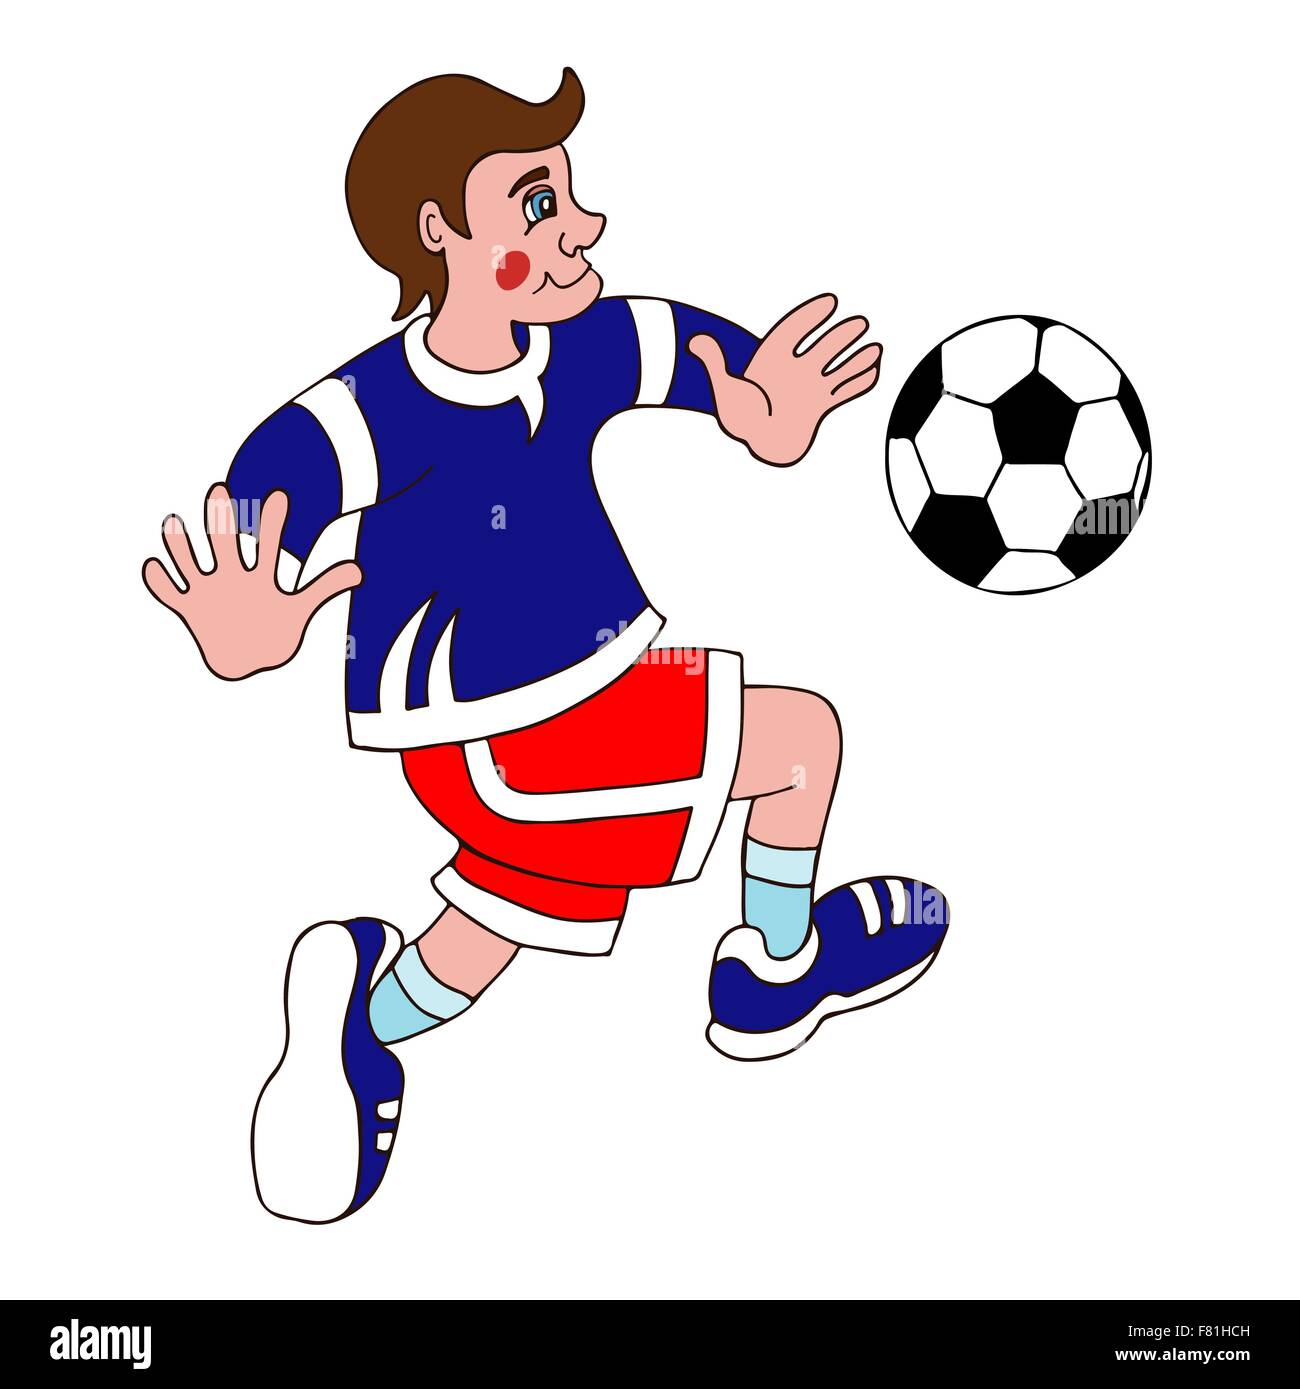 Illustrtaion De Un Niño De Patear La Pelota De Fútbol En Un Fondo Blanco  Ilustraciones svg, vectoriales, clip art vectorizado libre de derechos.  Image 19389608